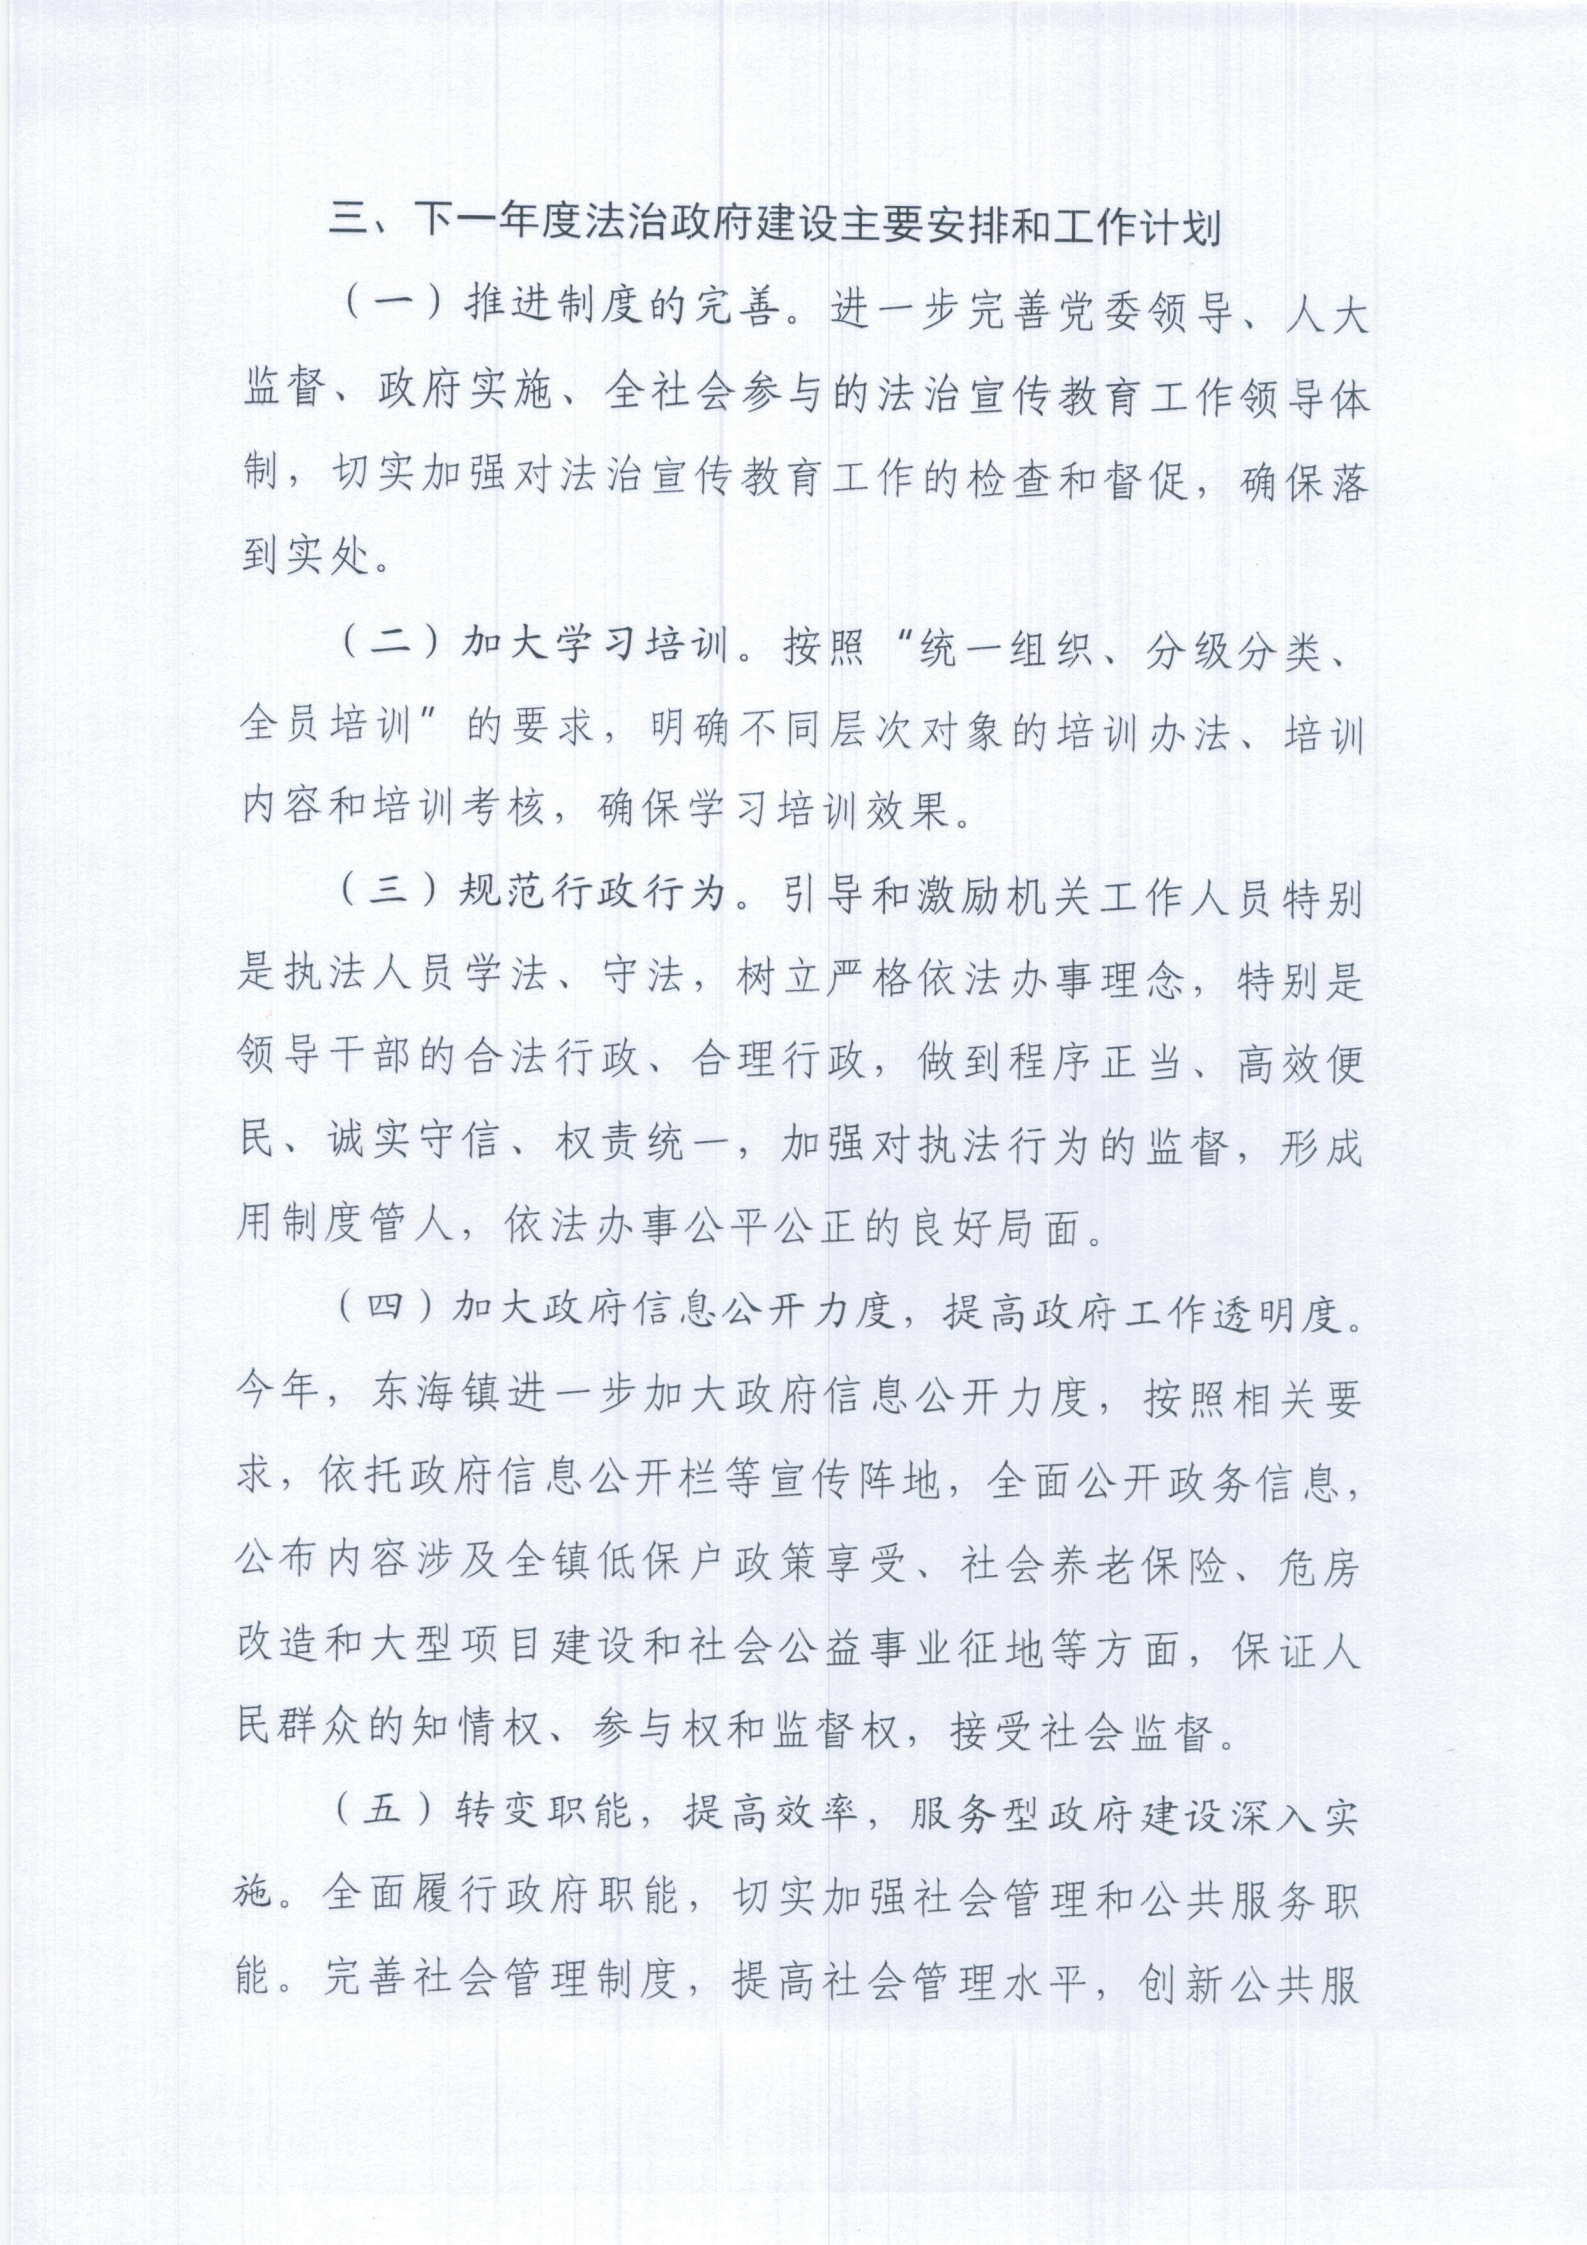 东海镇人民政府2020年度法治政府建设年度报告 (2)_03.png